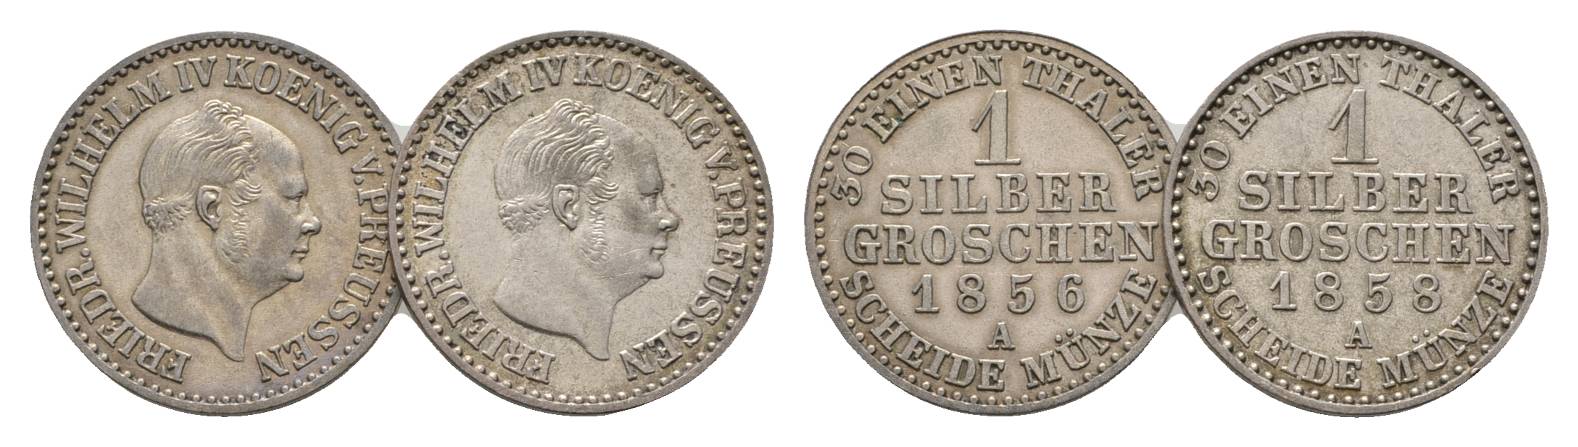  Preußen, 2 Kleinmünzen, 1856/ 1858   